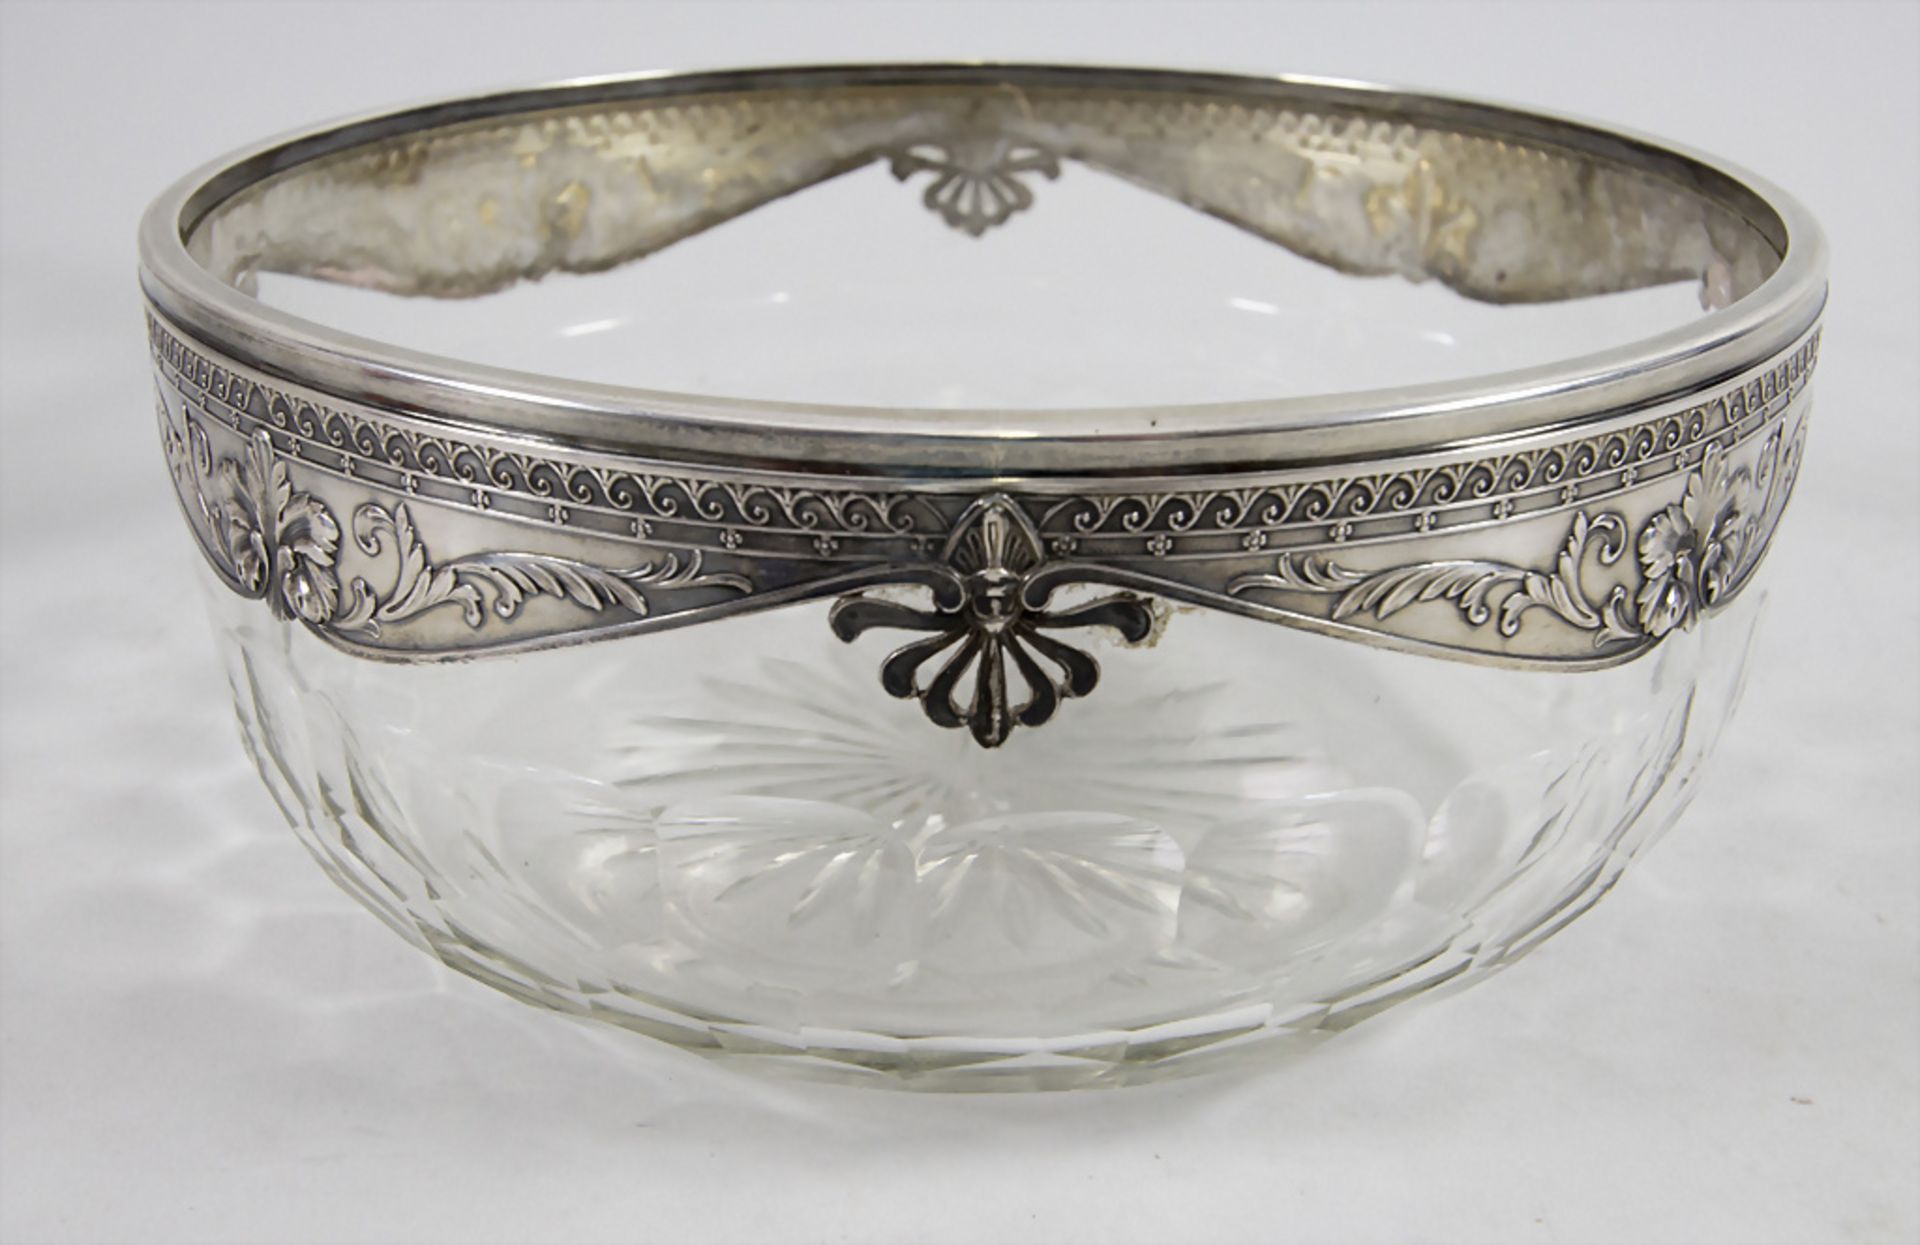 Obstschale / A fruit bowl with silver mount, Société Parisienne d'Orfèvrerie, Paris, 1910-14 - Image 4 of 4